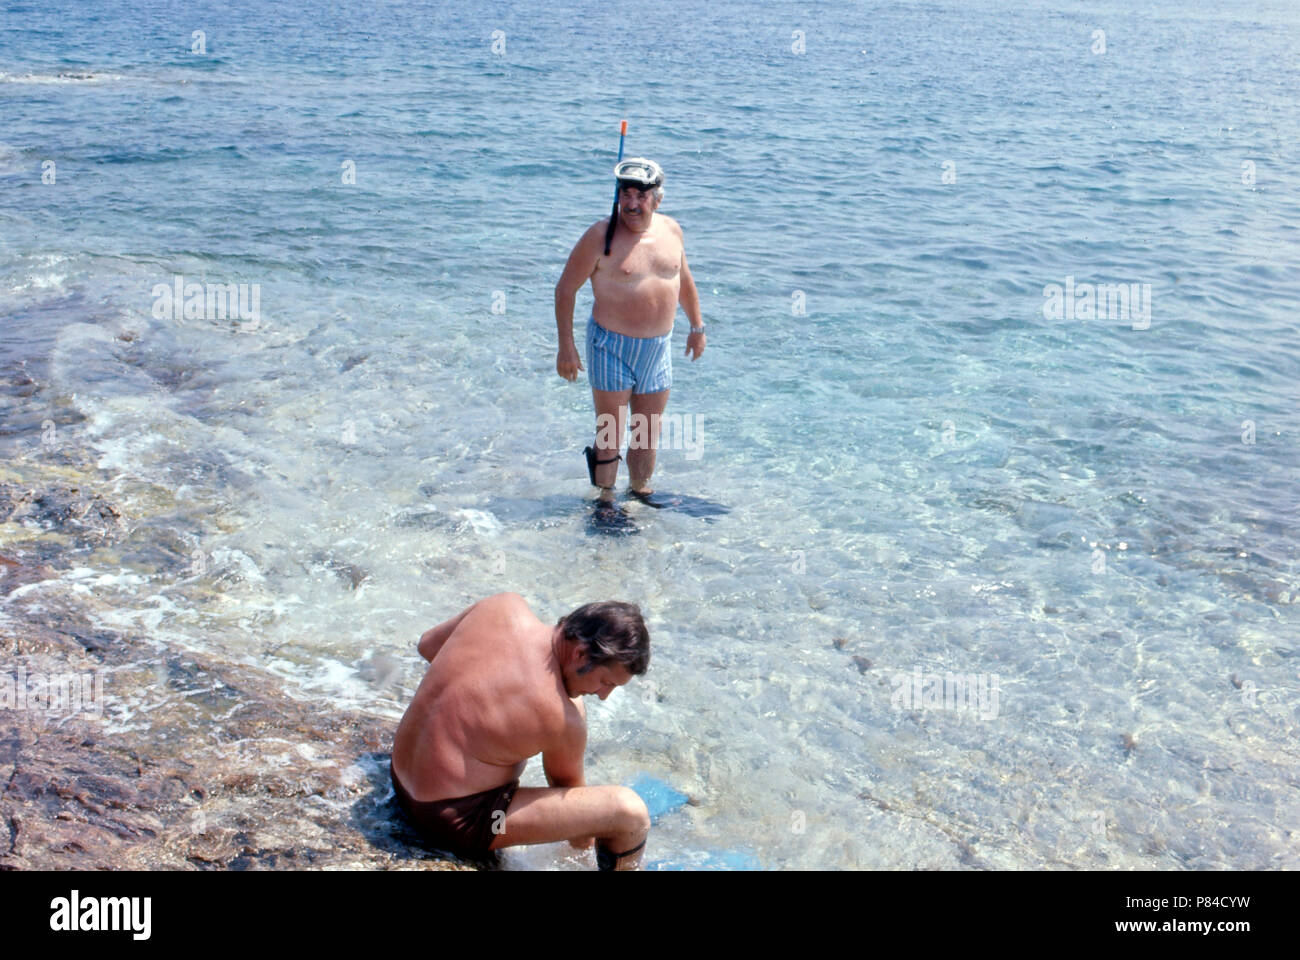 Willy Millowitsch im Urlaub auf Elba, Italien 1974. Willy Millowitsch enjoying his summer vacation at Elba, Italy 1974. Stock Photo